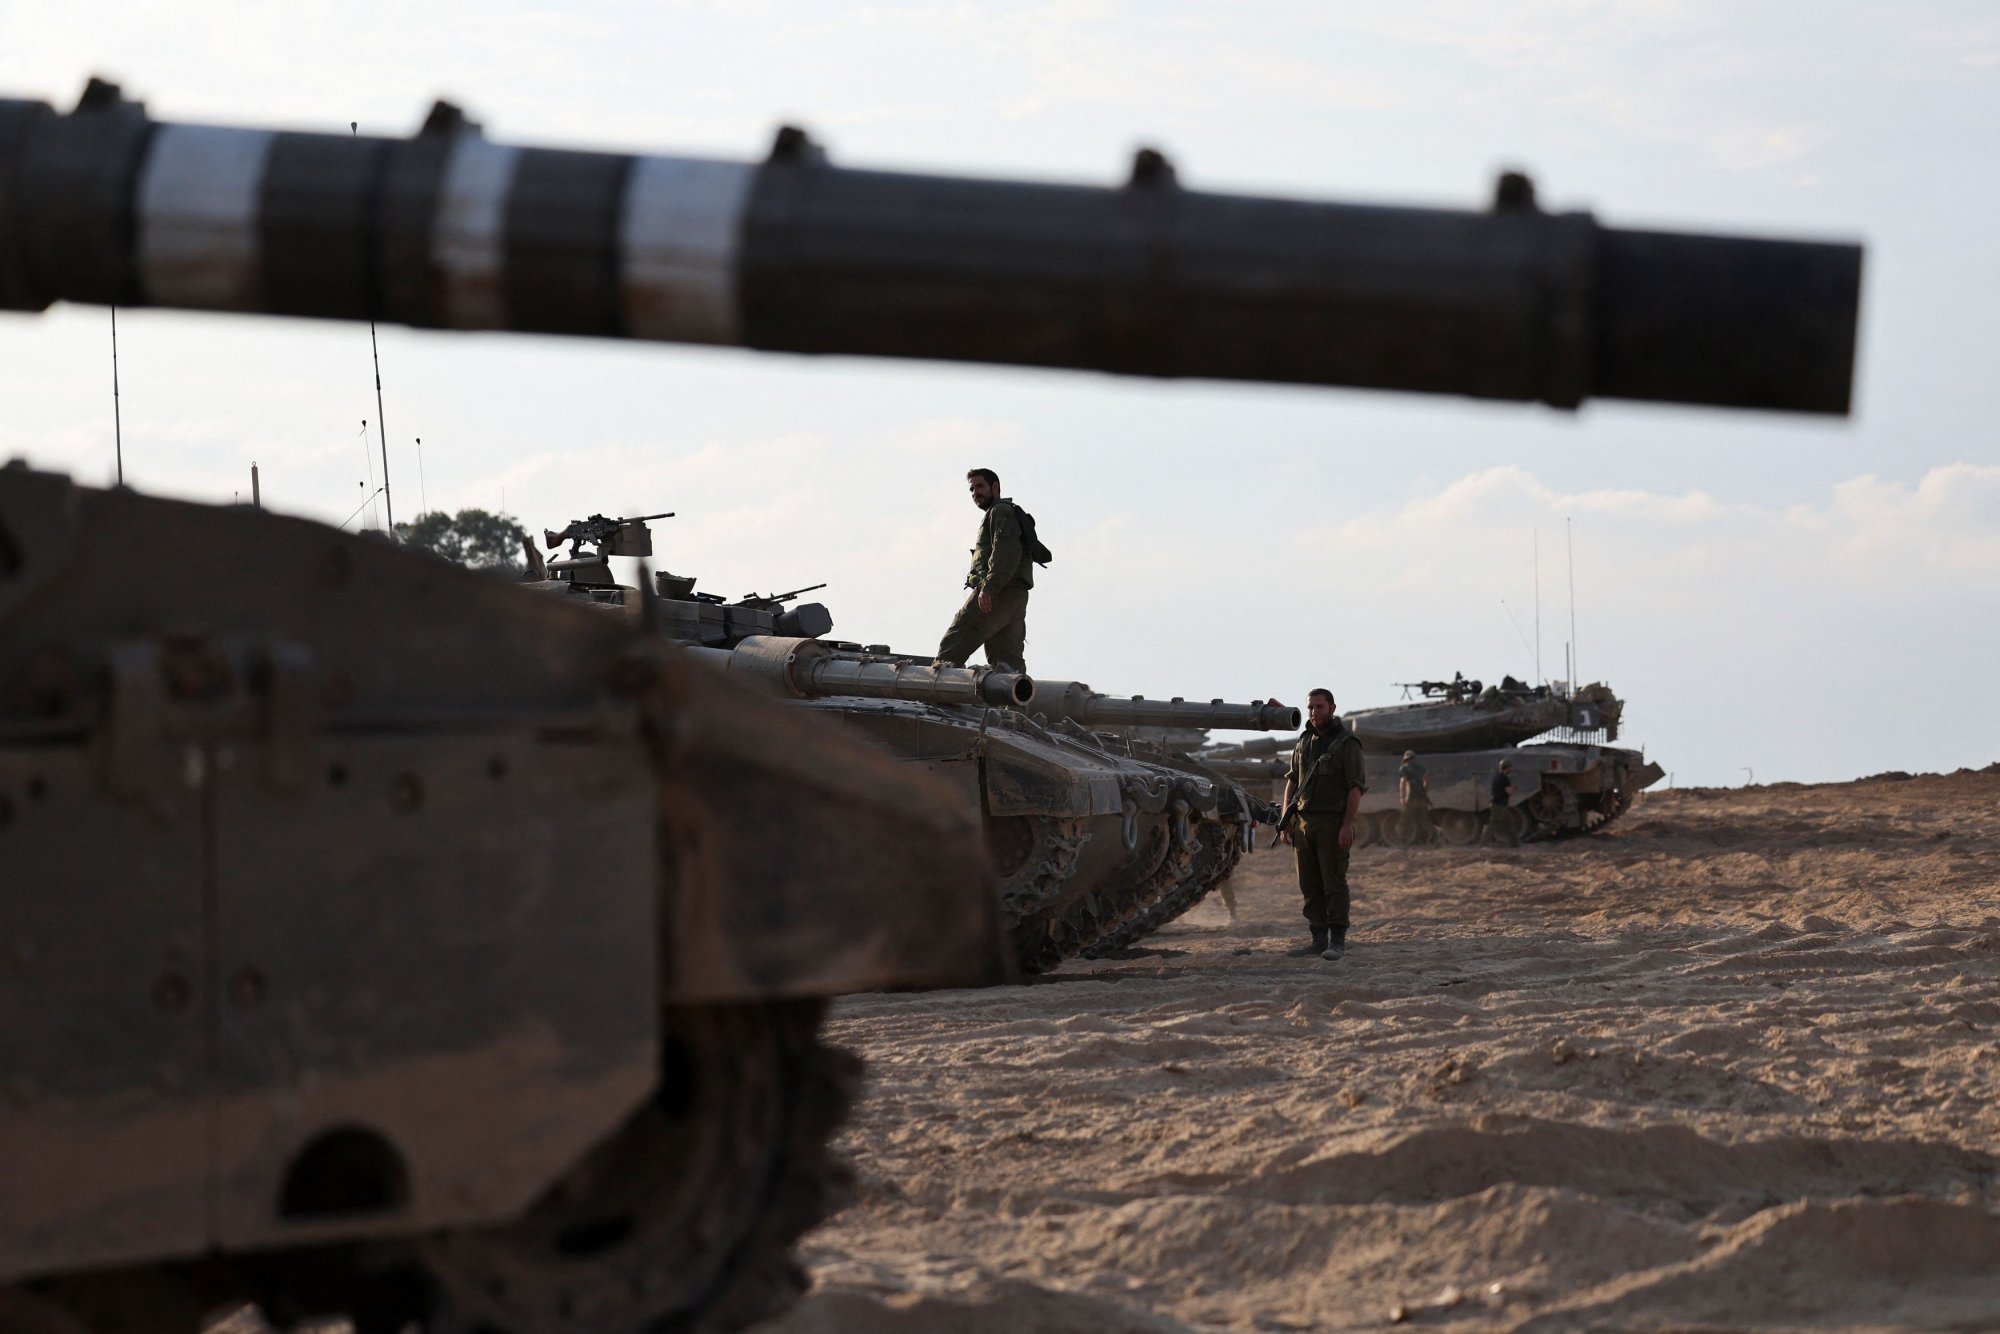 Ανήσυχοι οι ειδικοί από την ανεξέλεγκτη παραπληροφόρηση για τη σύγκρουση Ισραήλ - Παλαιστινίων